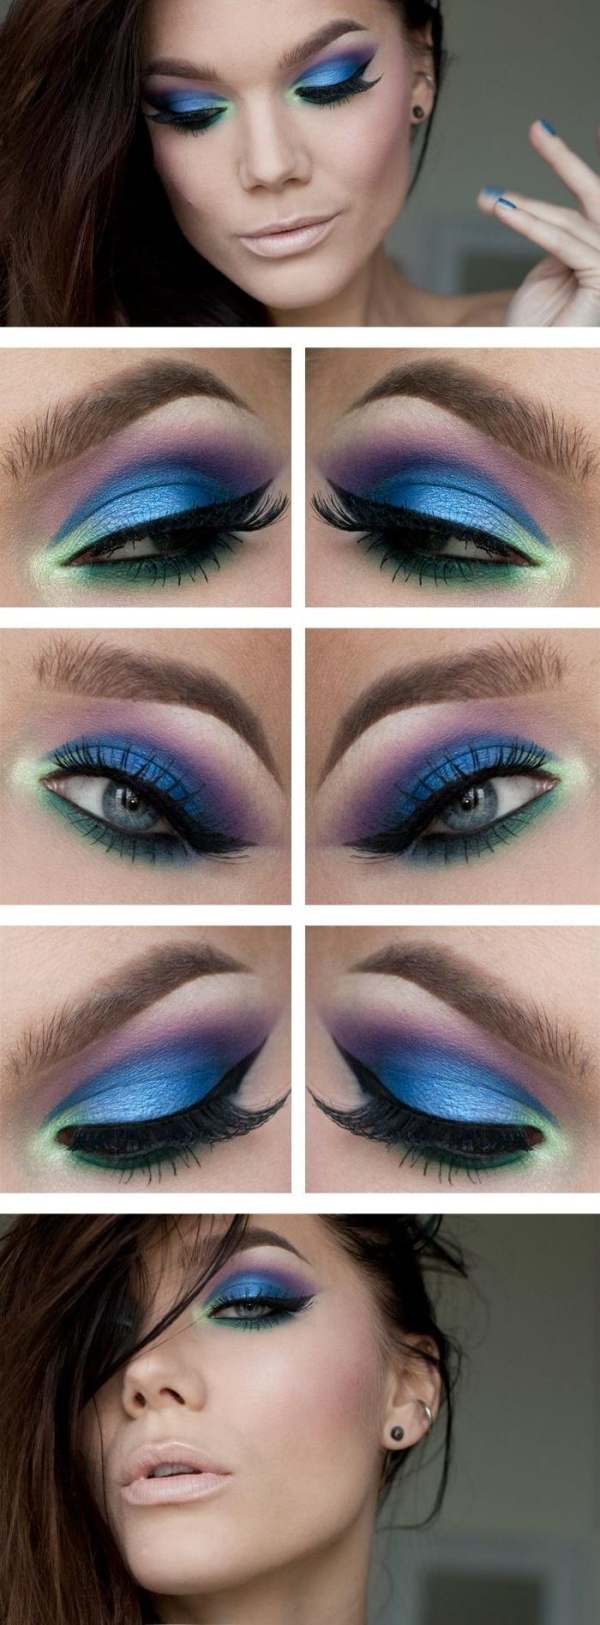 neon-make-up-anleitung-blaue-lidschatten-lipgloss-dezent